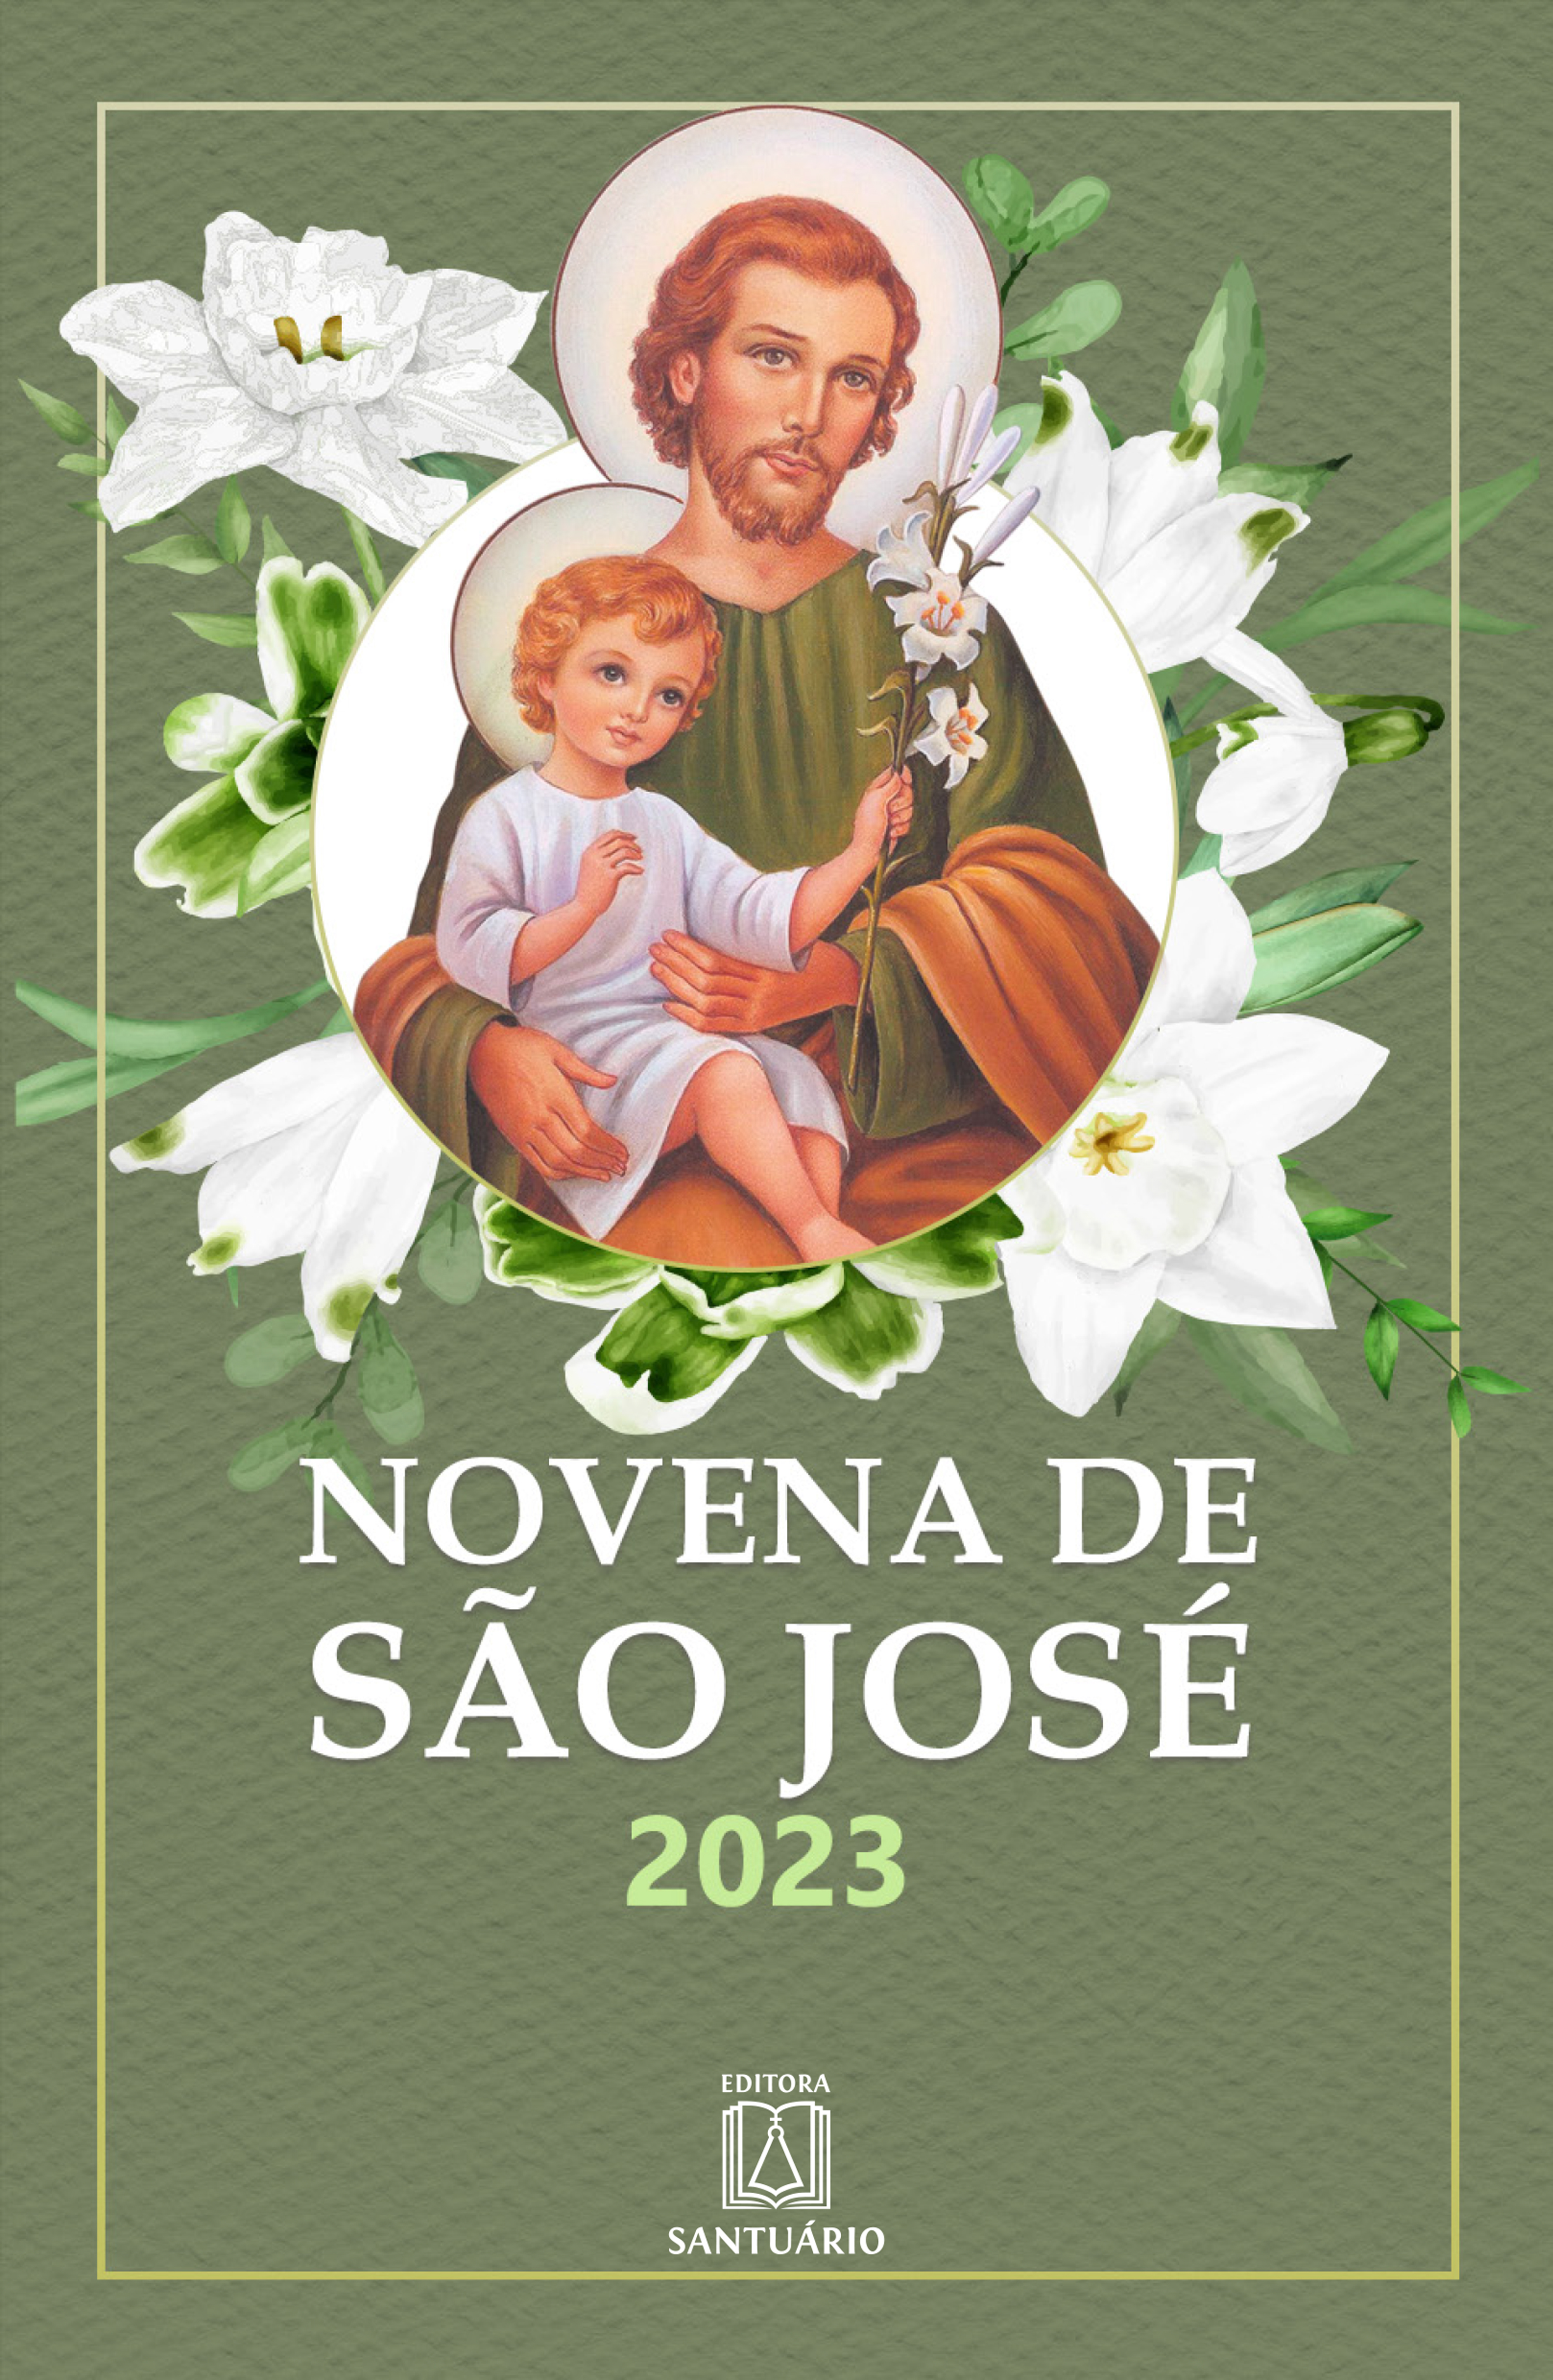 Novena de São José 2023